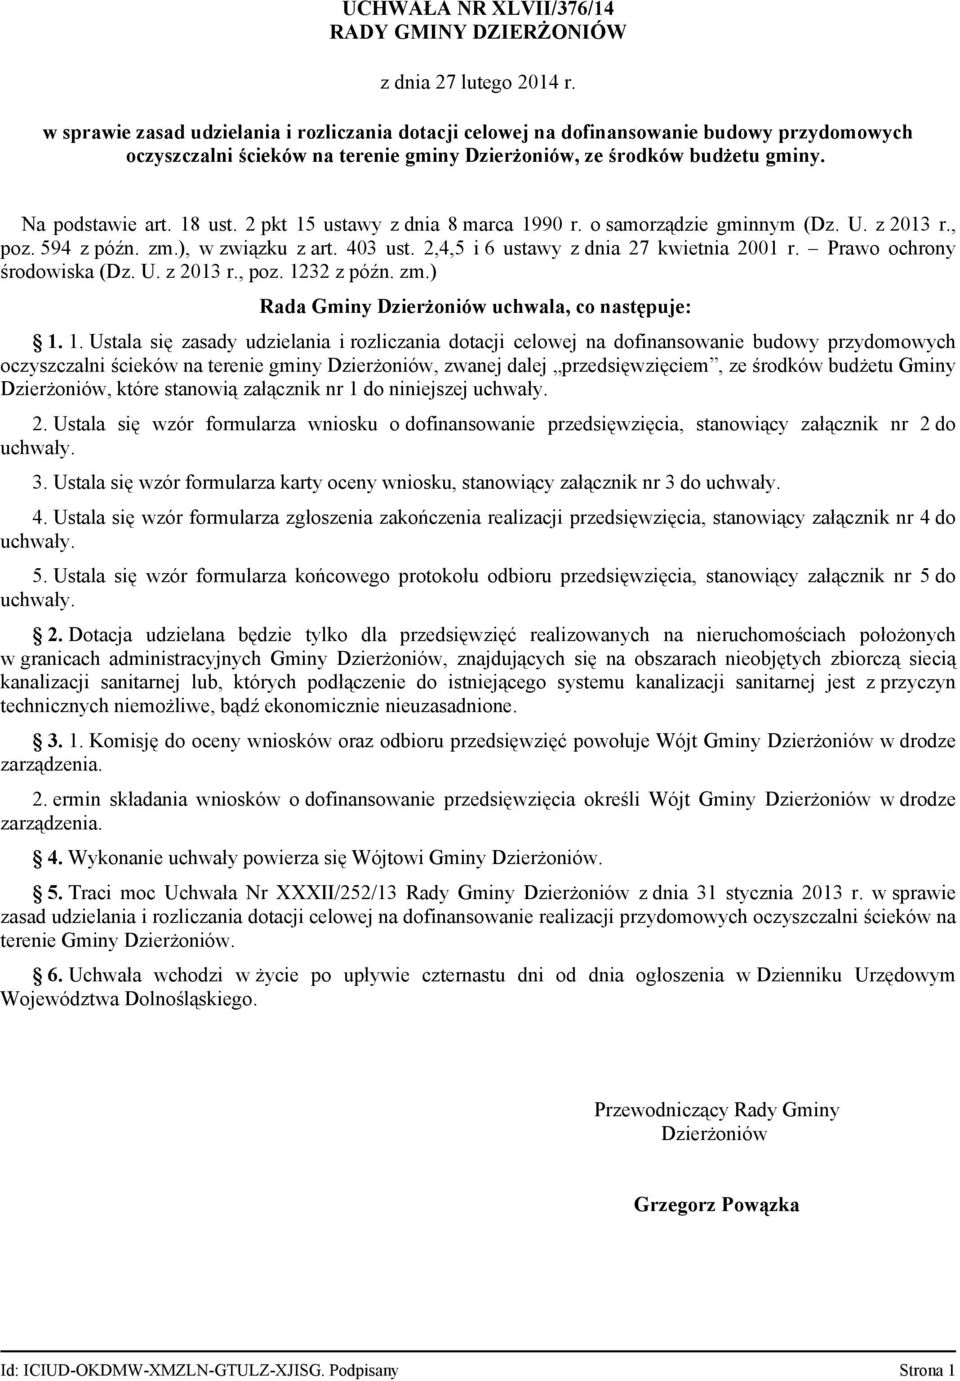 2,4,5 i 6 ustawy z dnia 27 kwietnia 2001 r. Prawo ochrony środowiska (Dz. U. z 2013 r., poz. 12